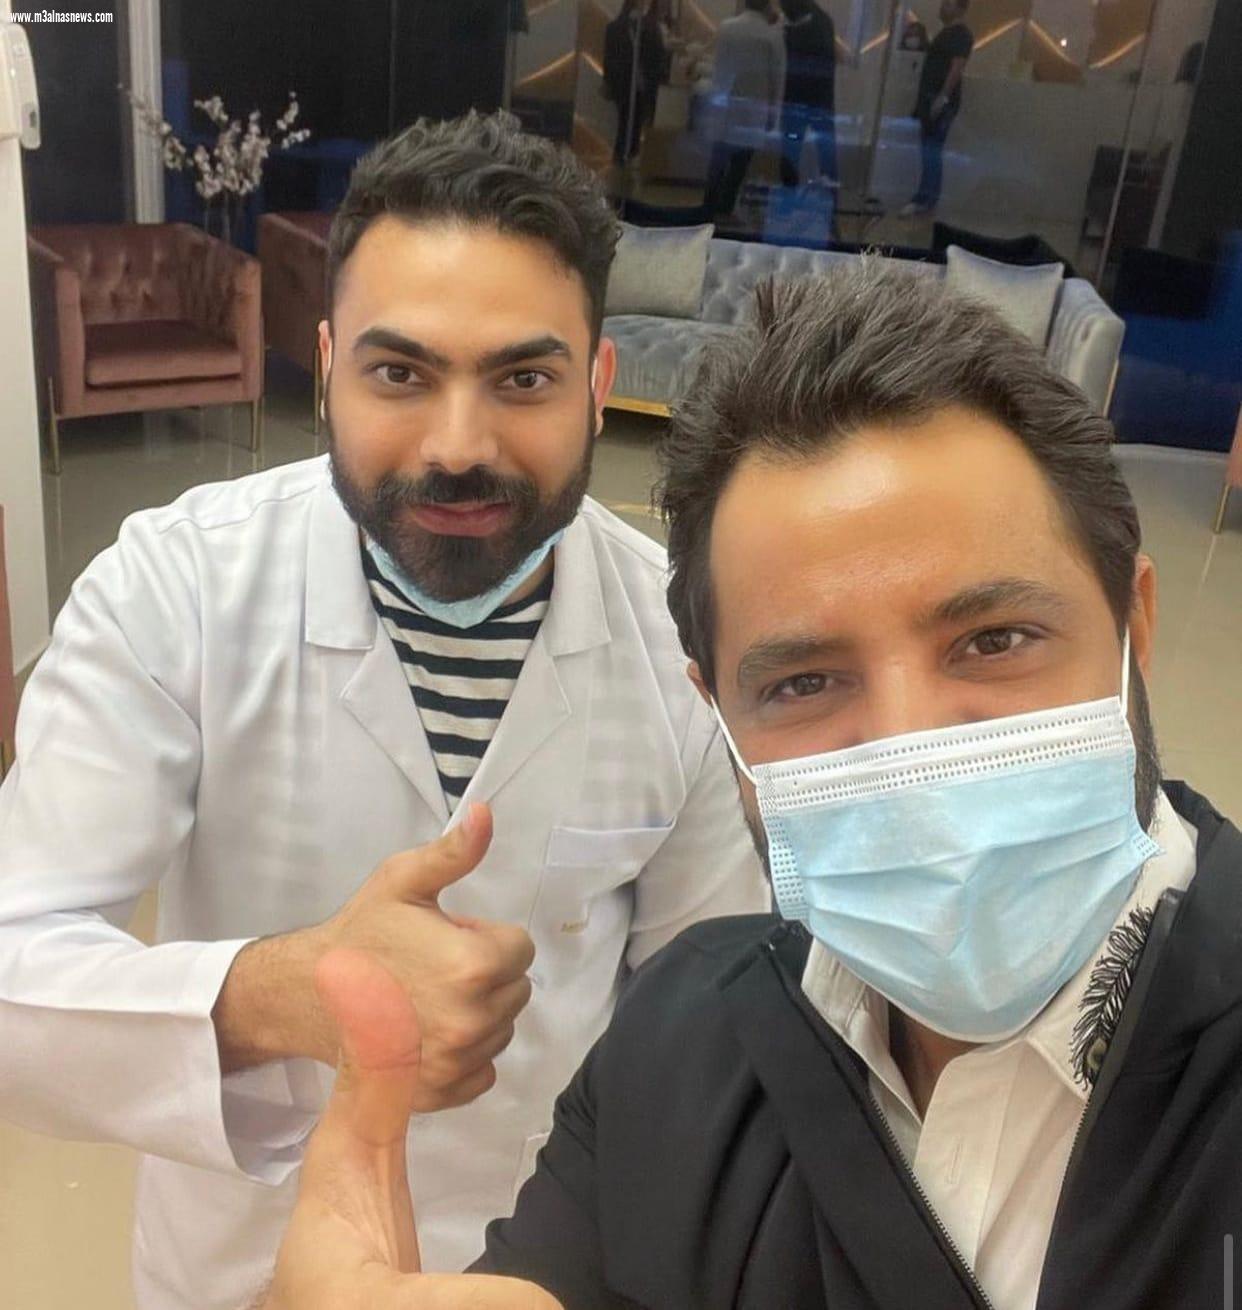 دكتور التجميل محمد أبوعرابي يكشف طرق إزالة الهالات السوداء حول الفم